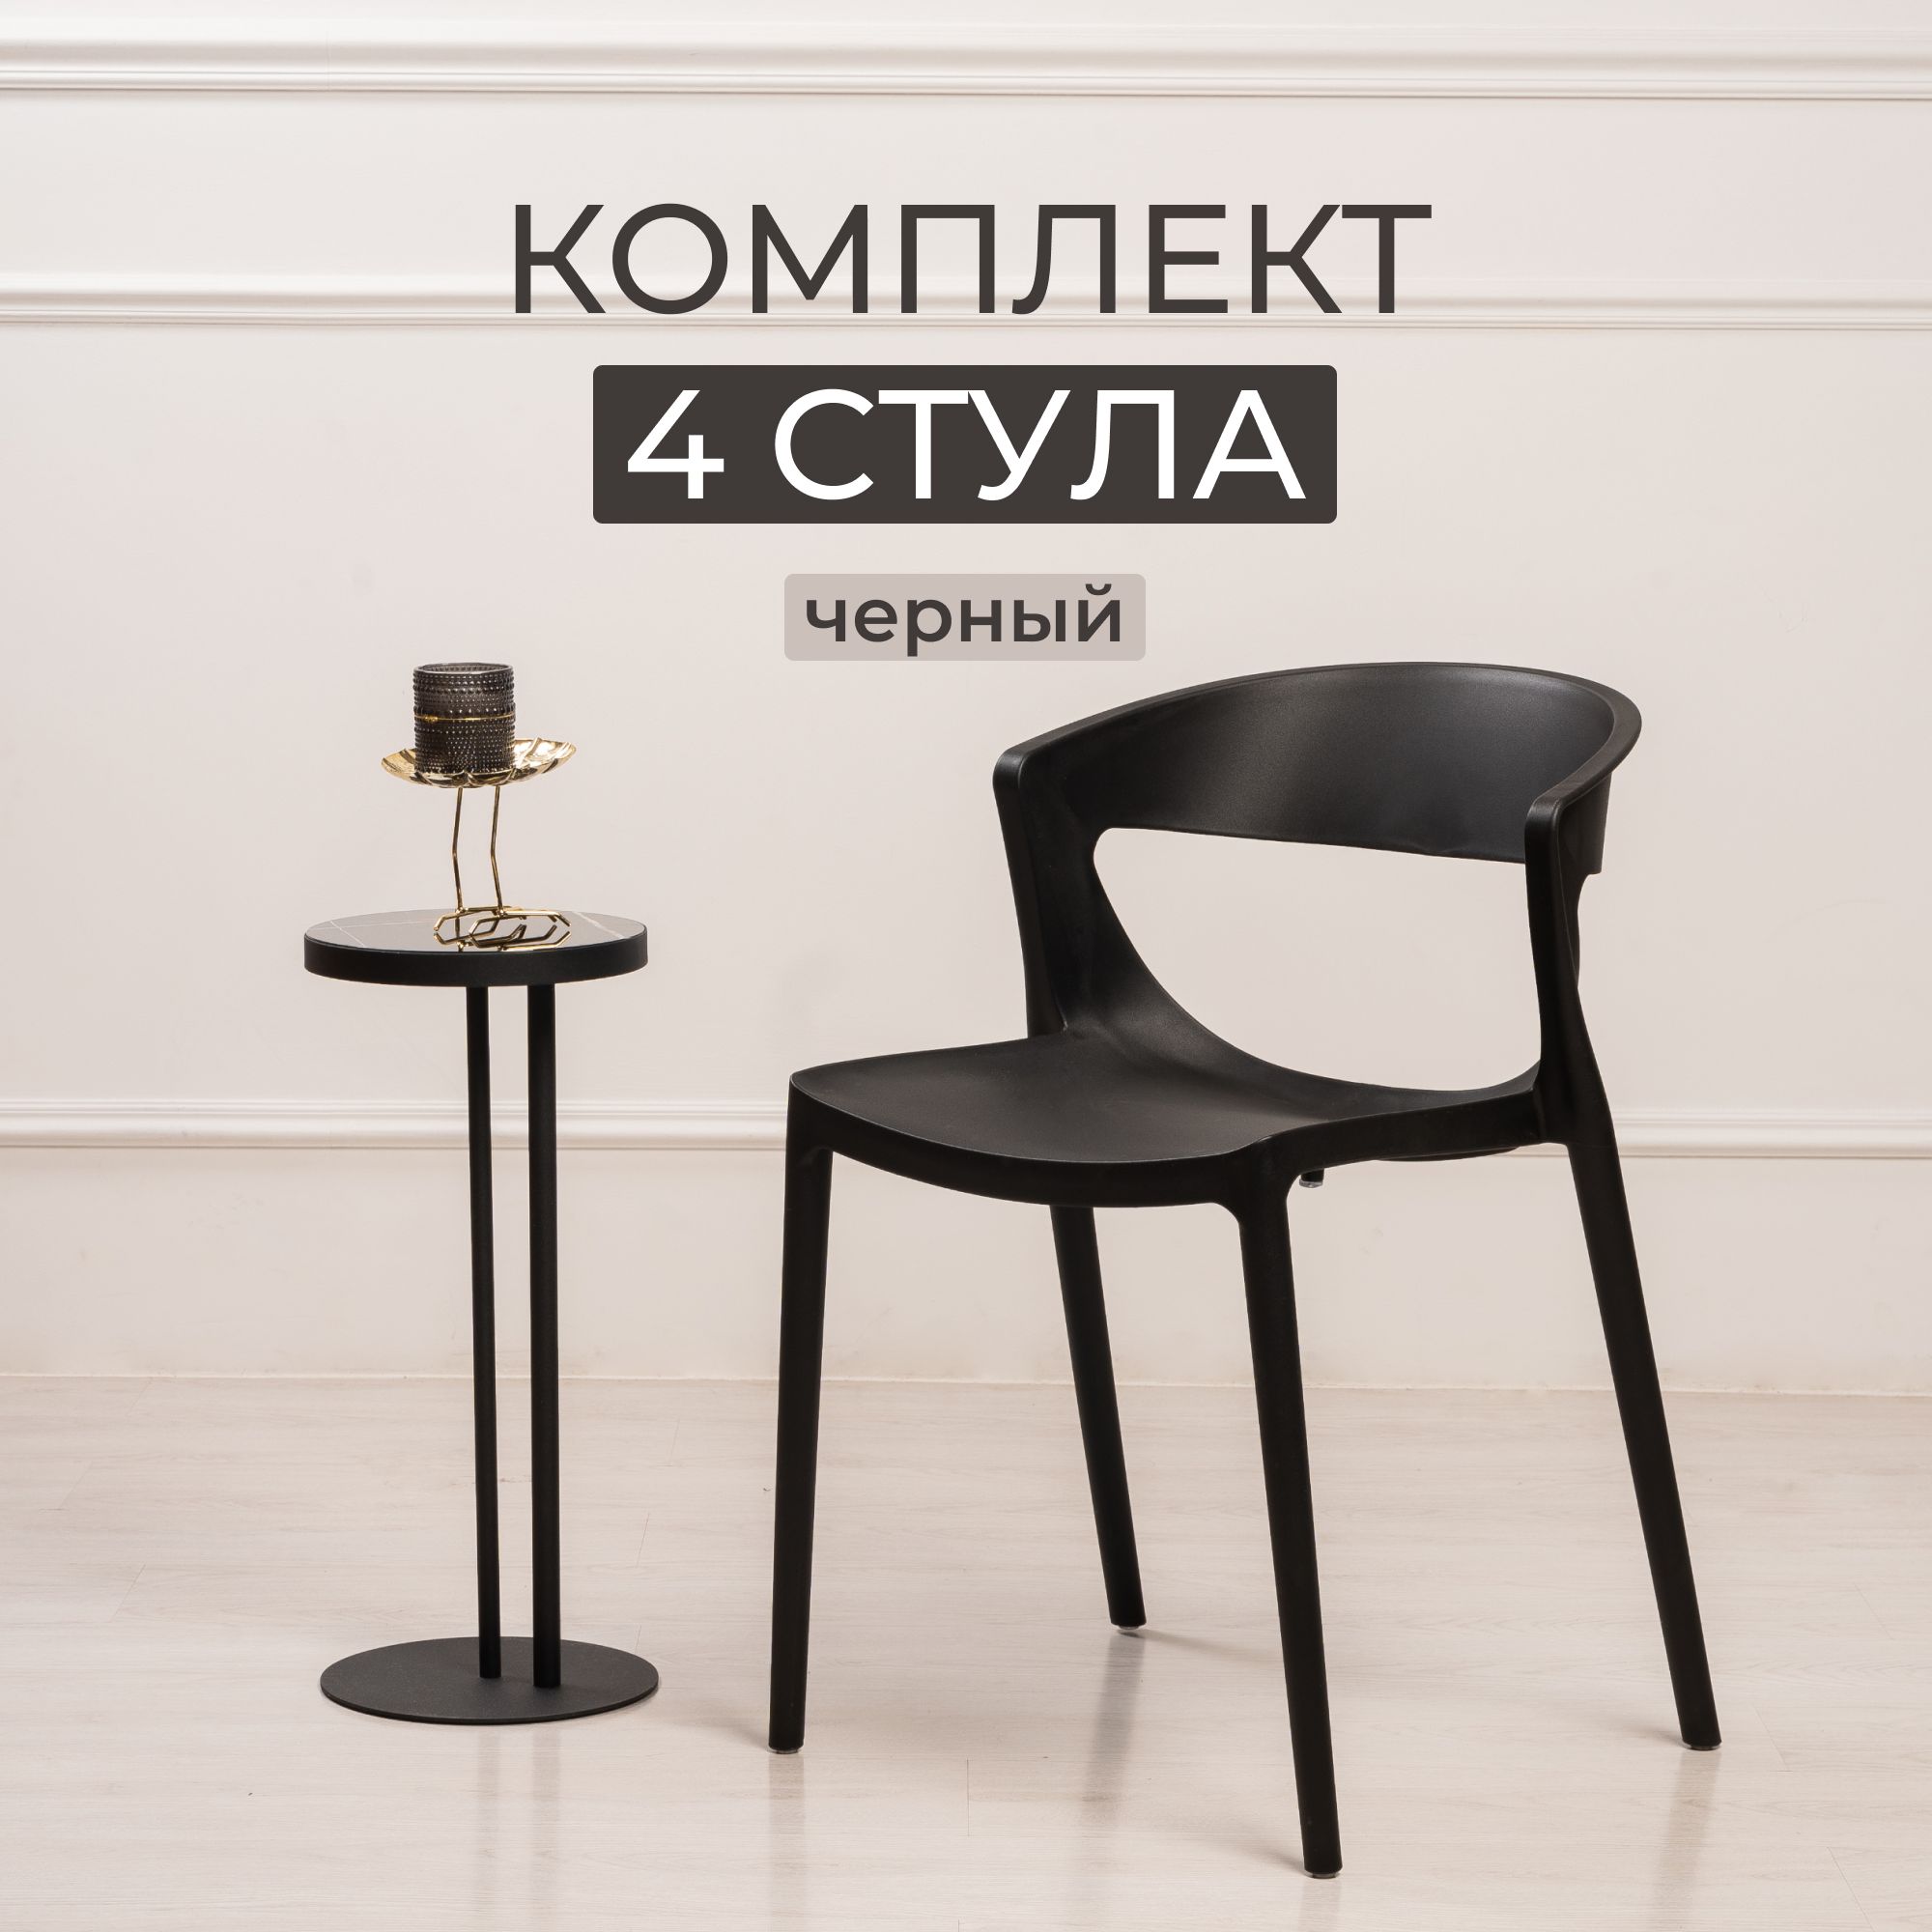 Комплект стульев для кухни, столовой и улицы из 4 шт STEPP EVOK PP0005B4 черный